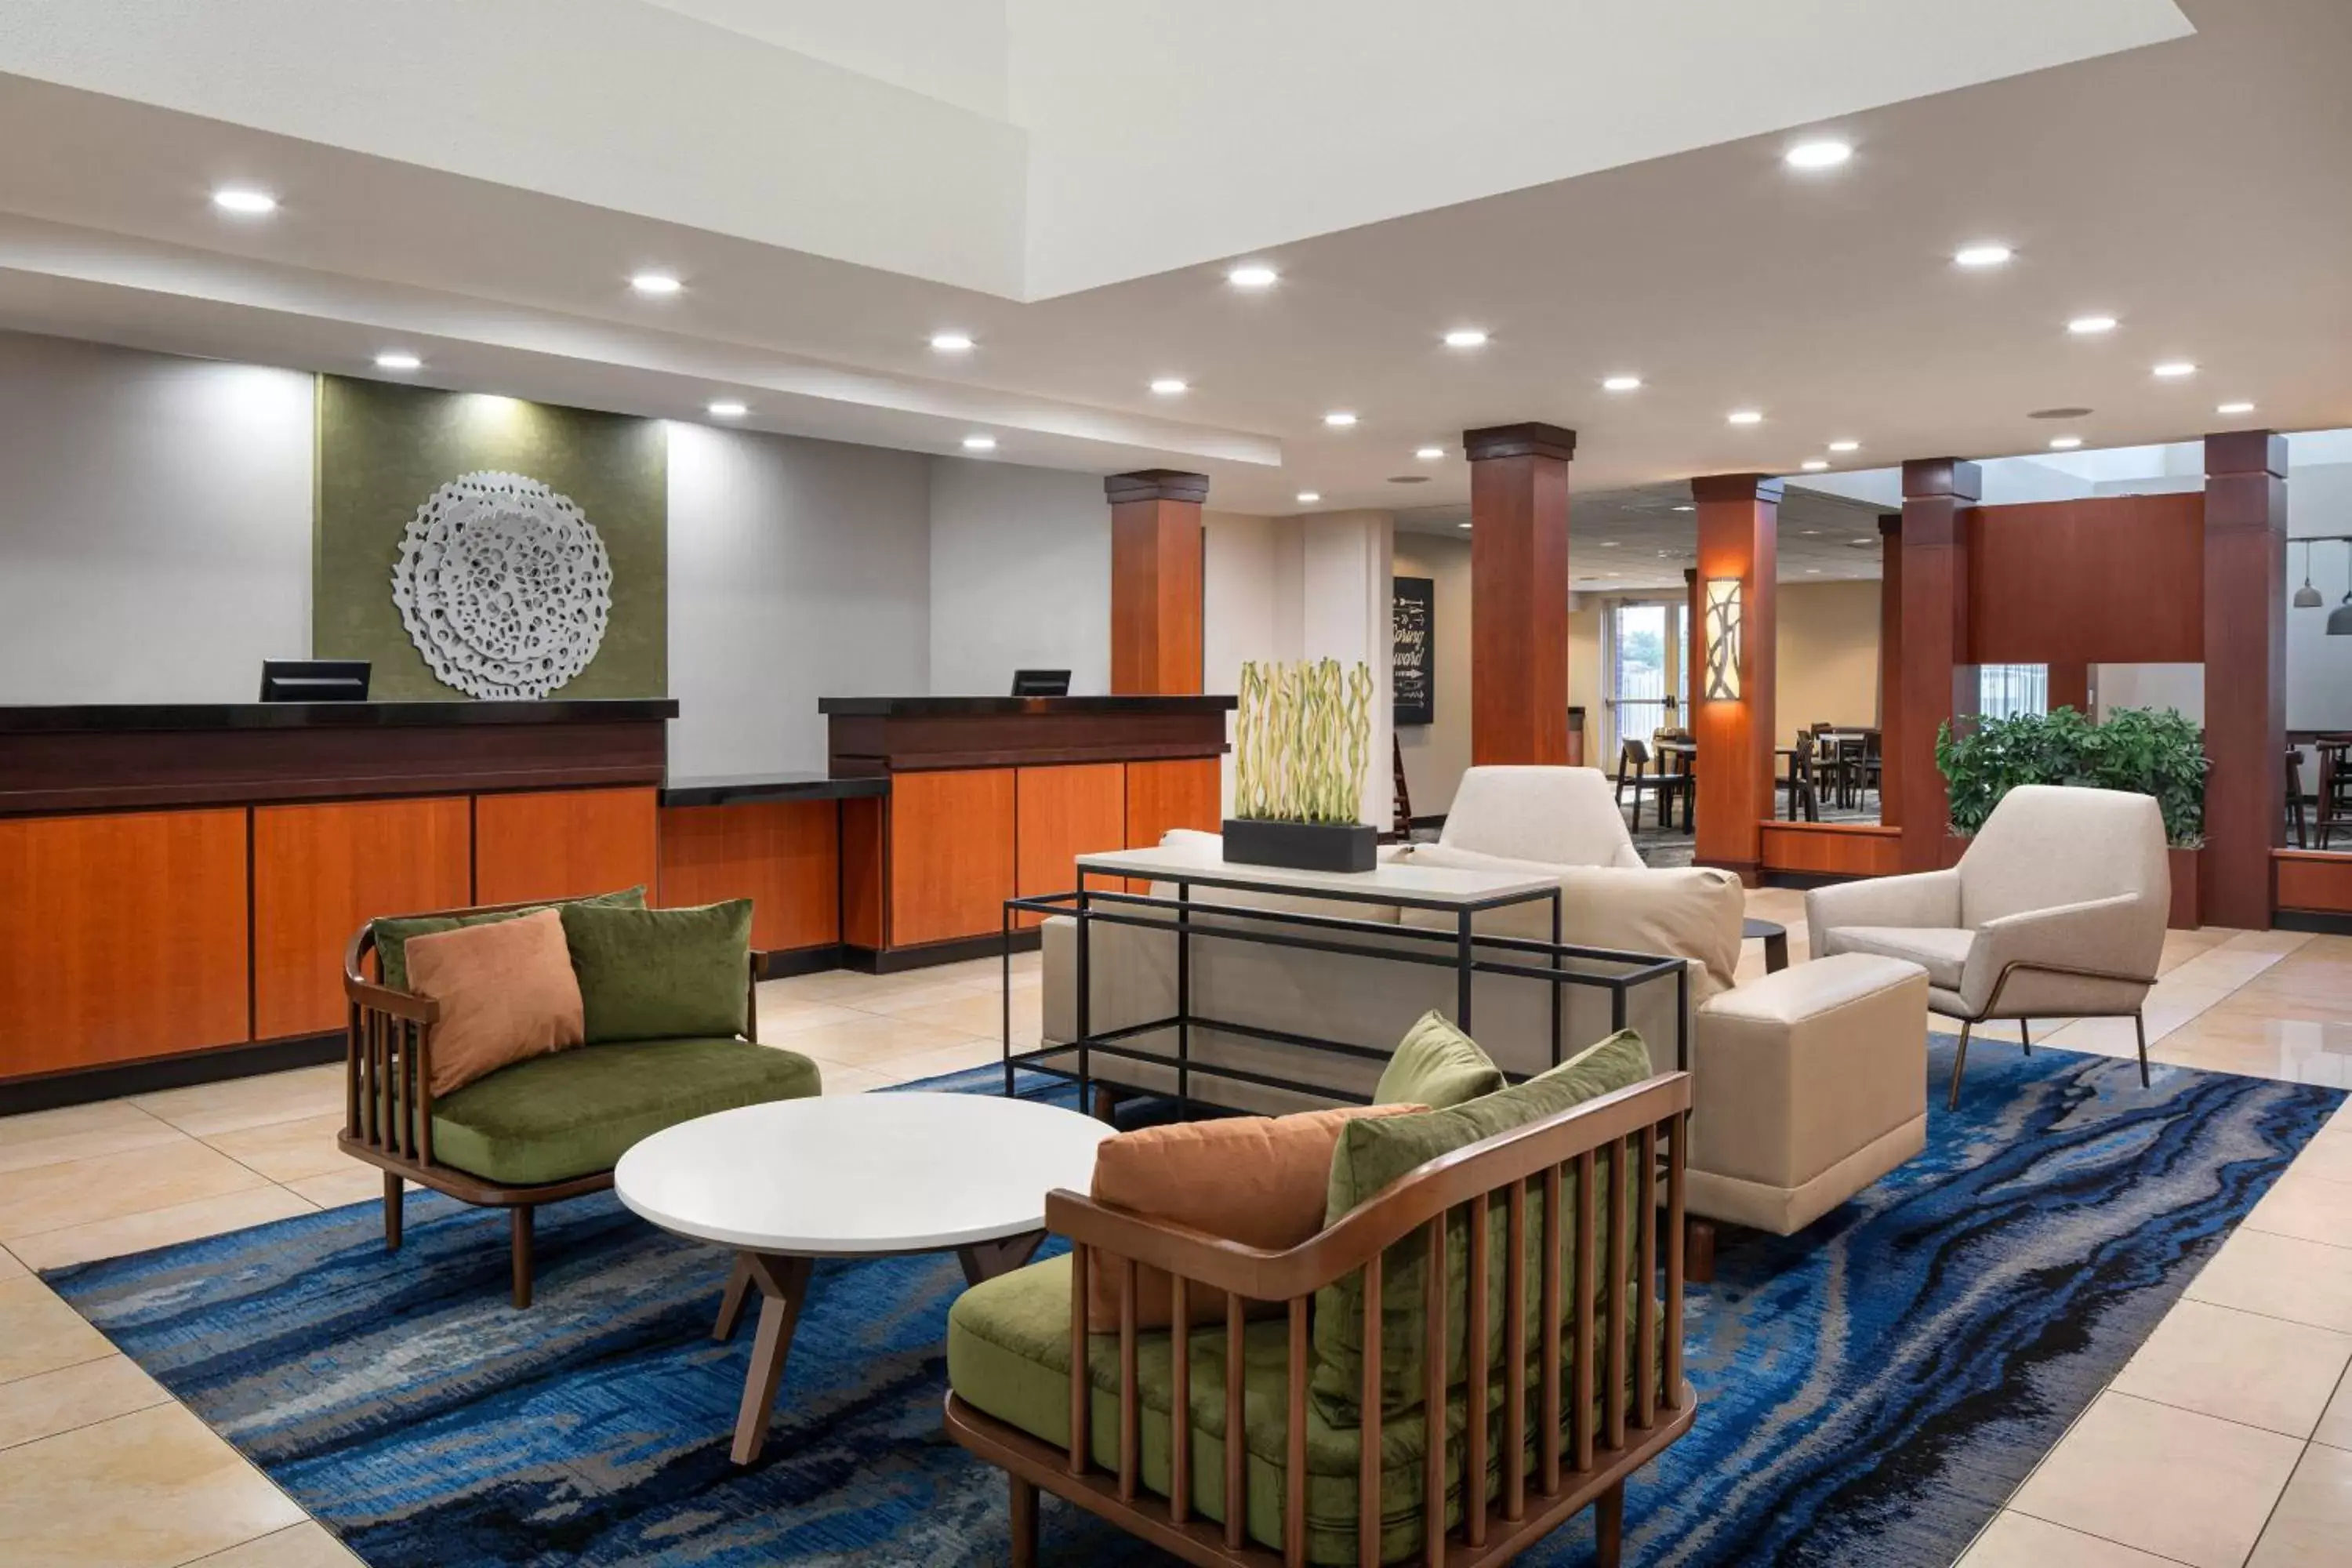 Lobby or reception, Lobby/Reception in Fairfield Inn & Suites by Marriott Visalia Tulare